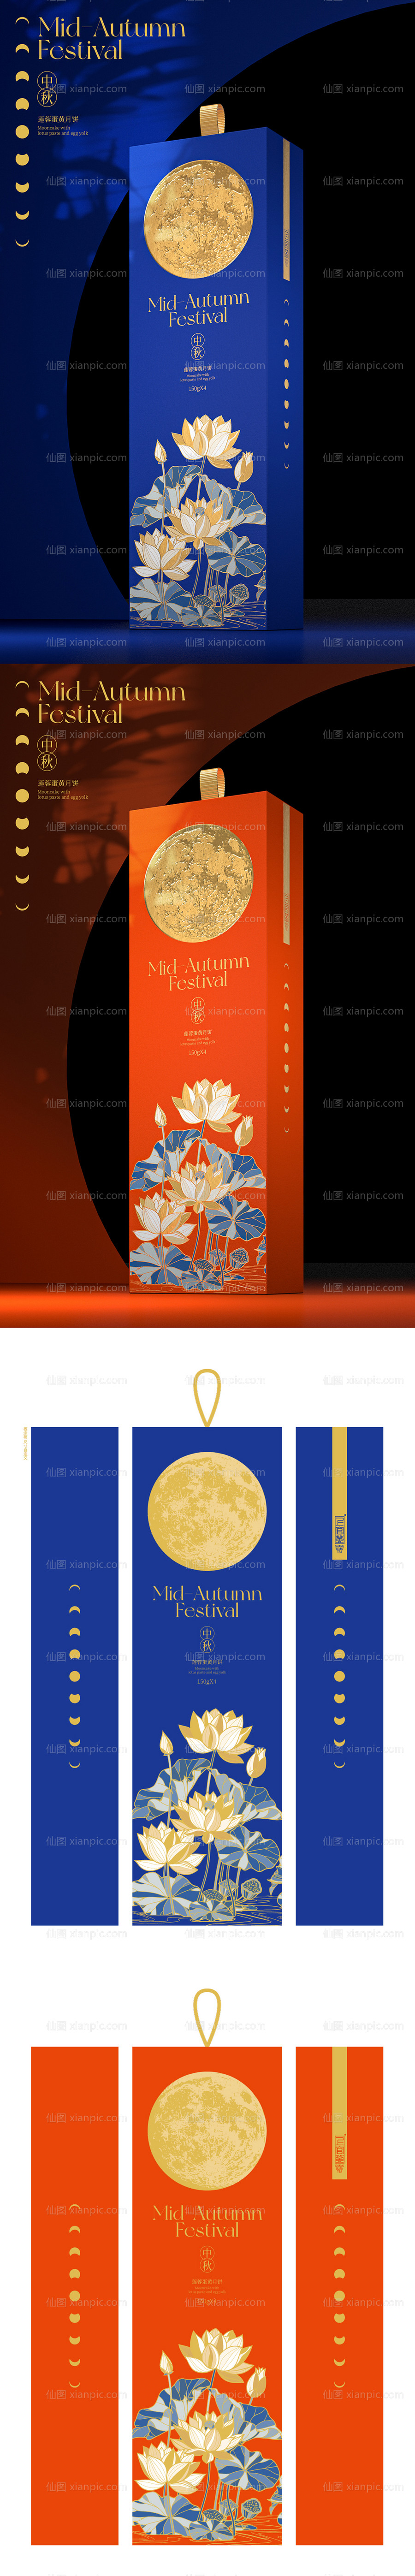 素材乐-中秋节荷塘月色月饼礼盒包装设计